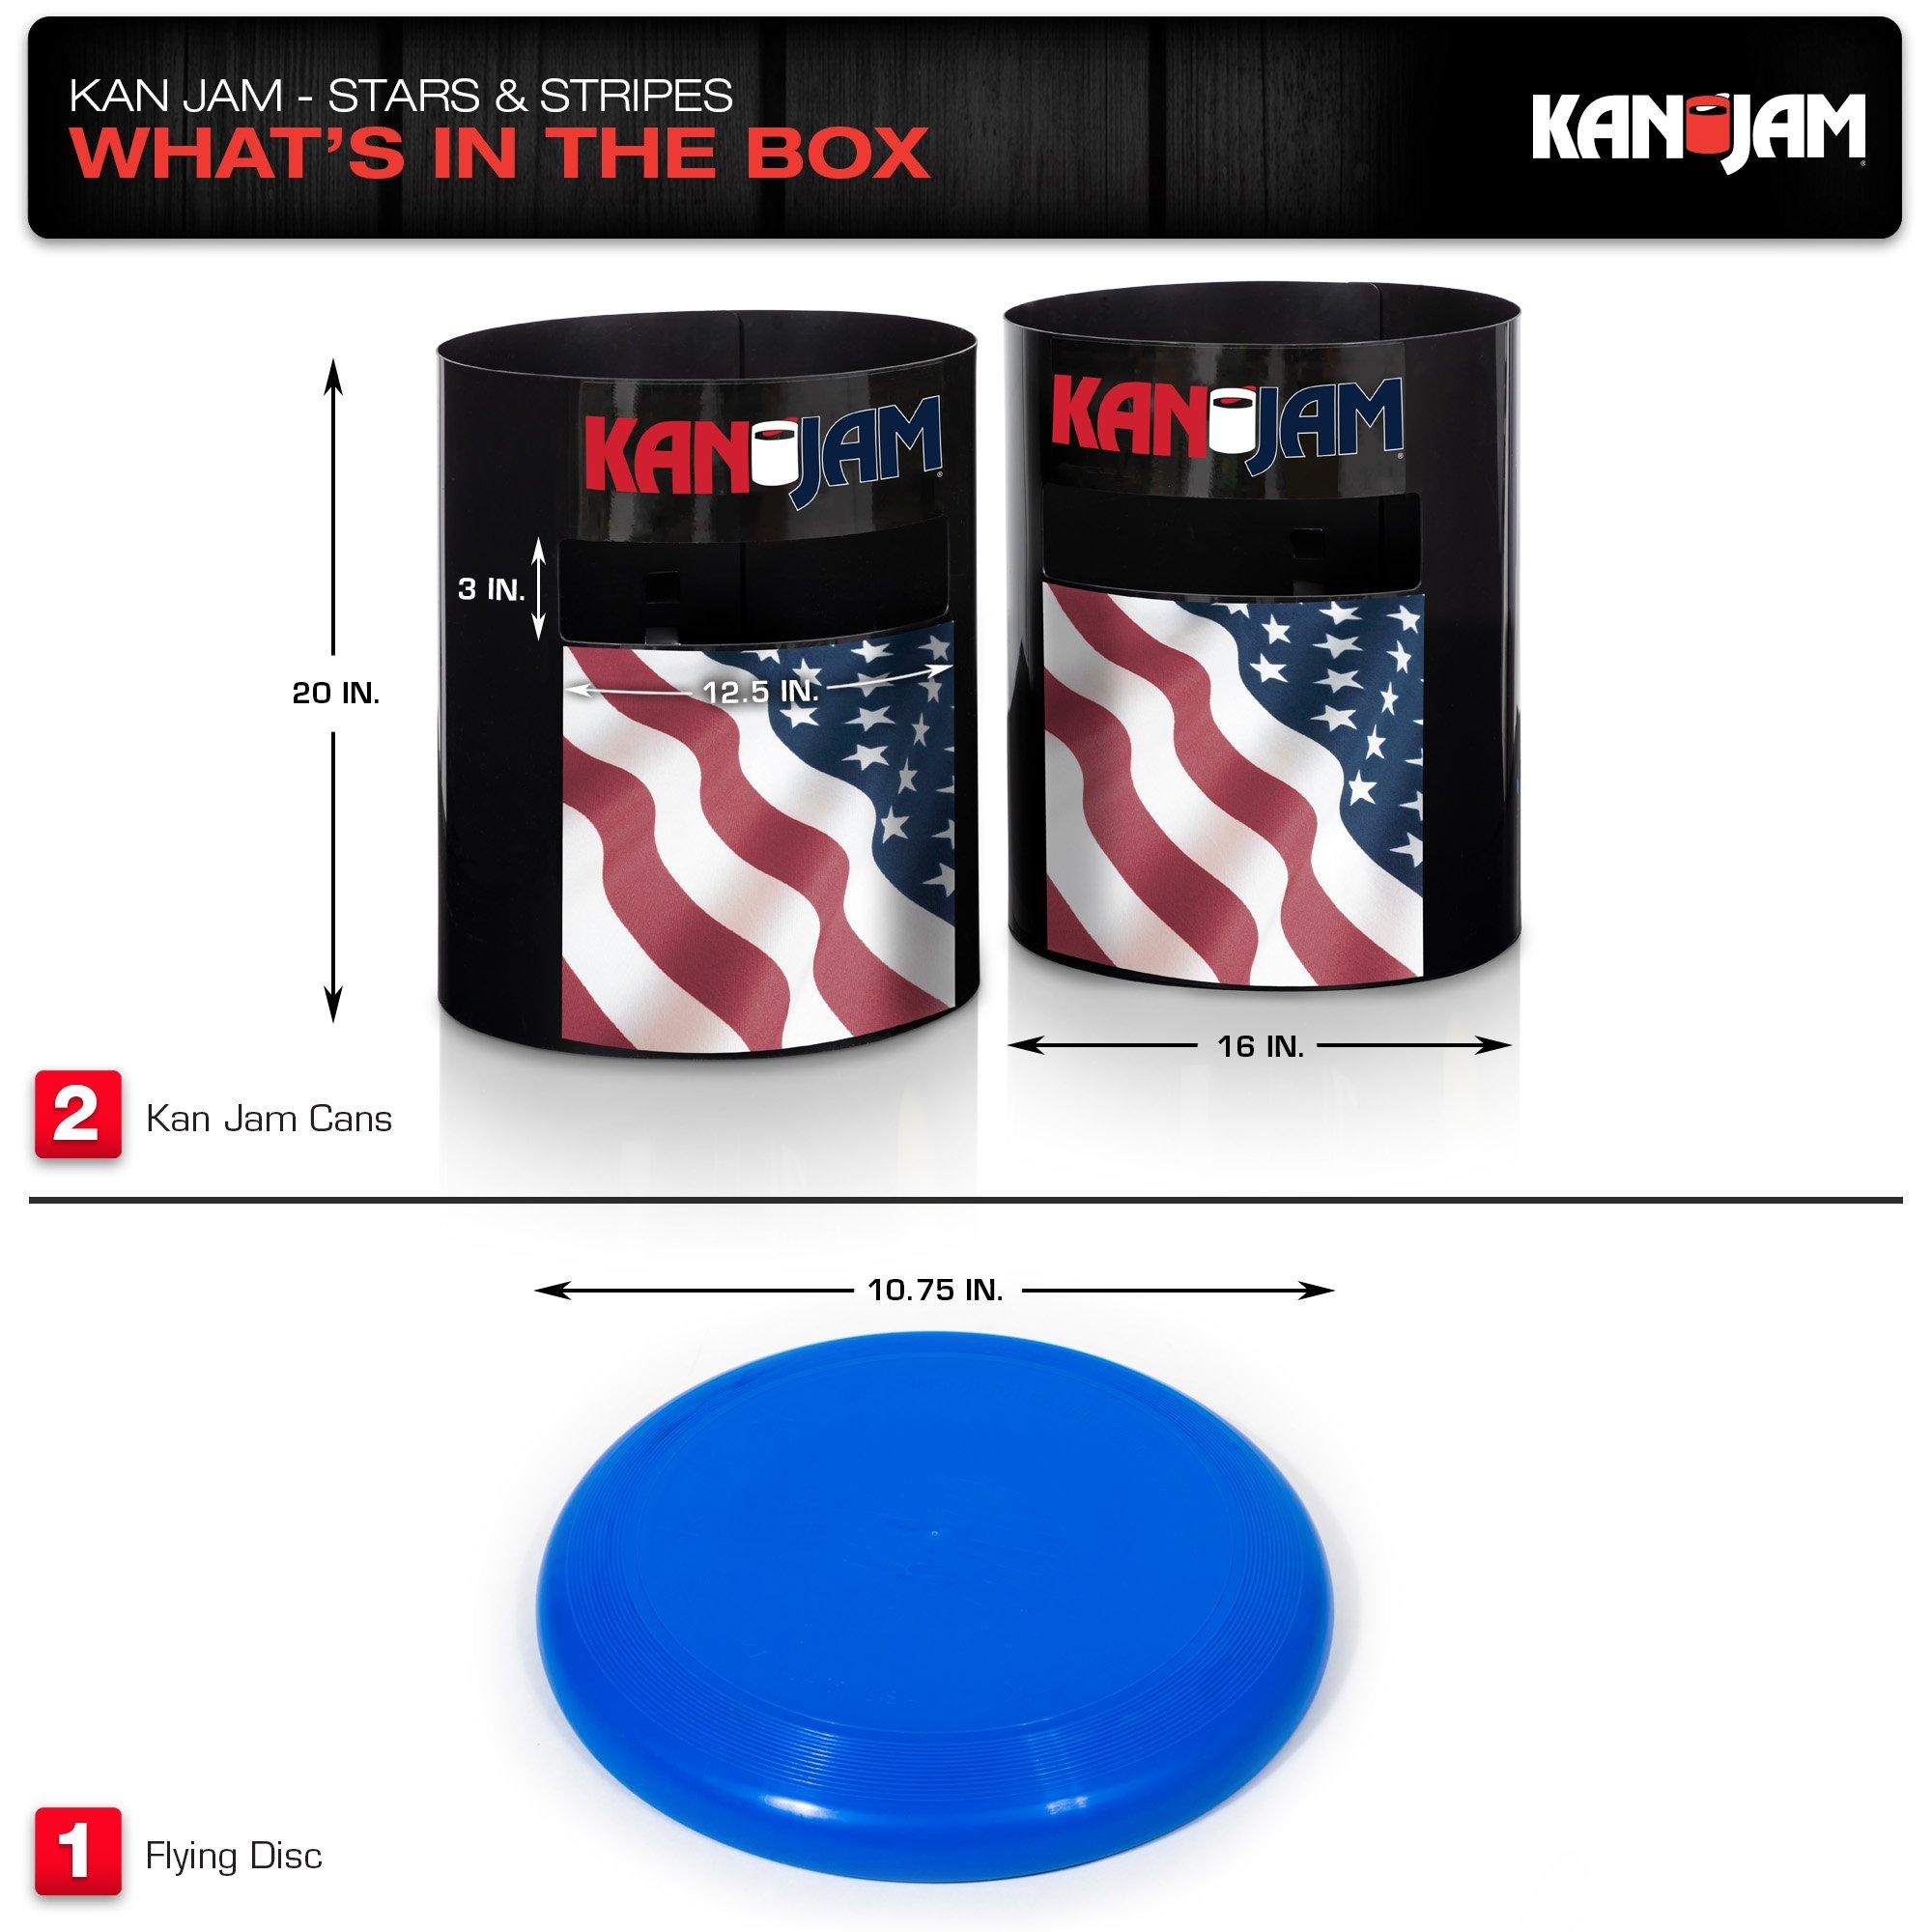 Kan Jam Original Disc Throwing Game USA Edition